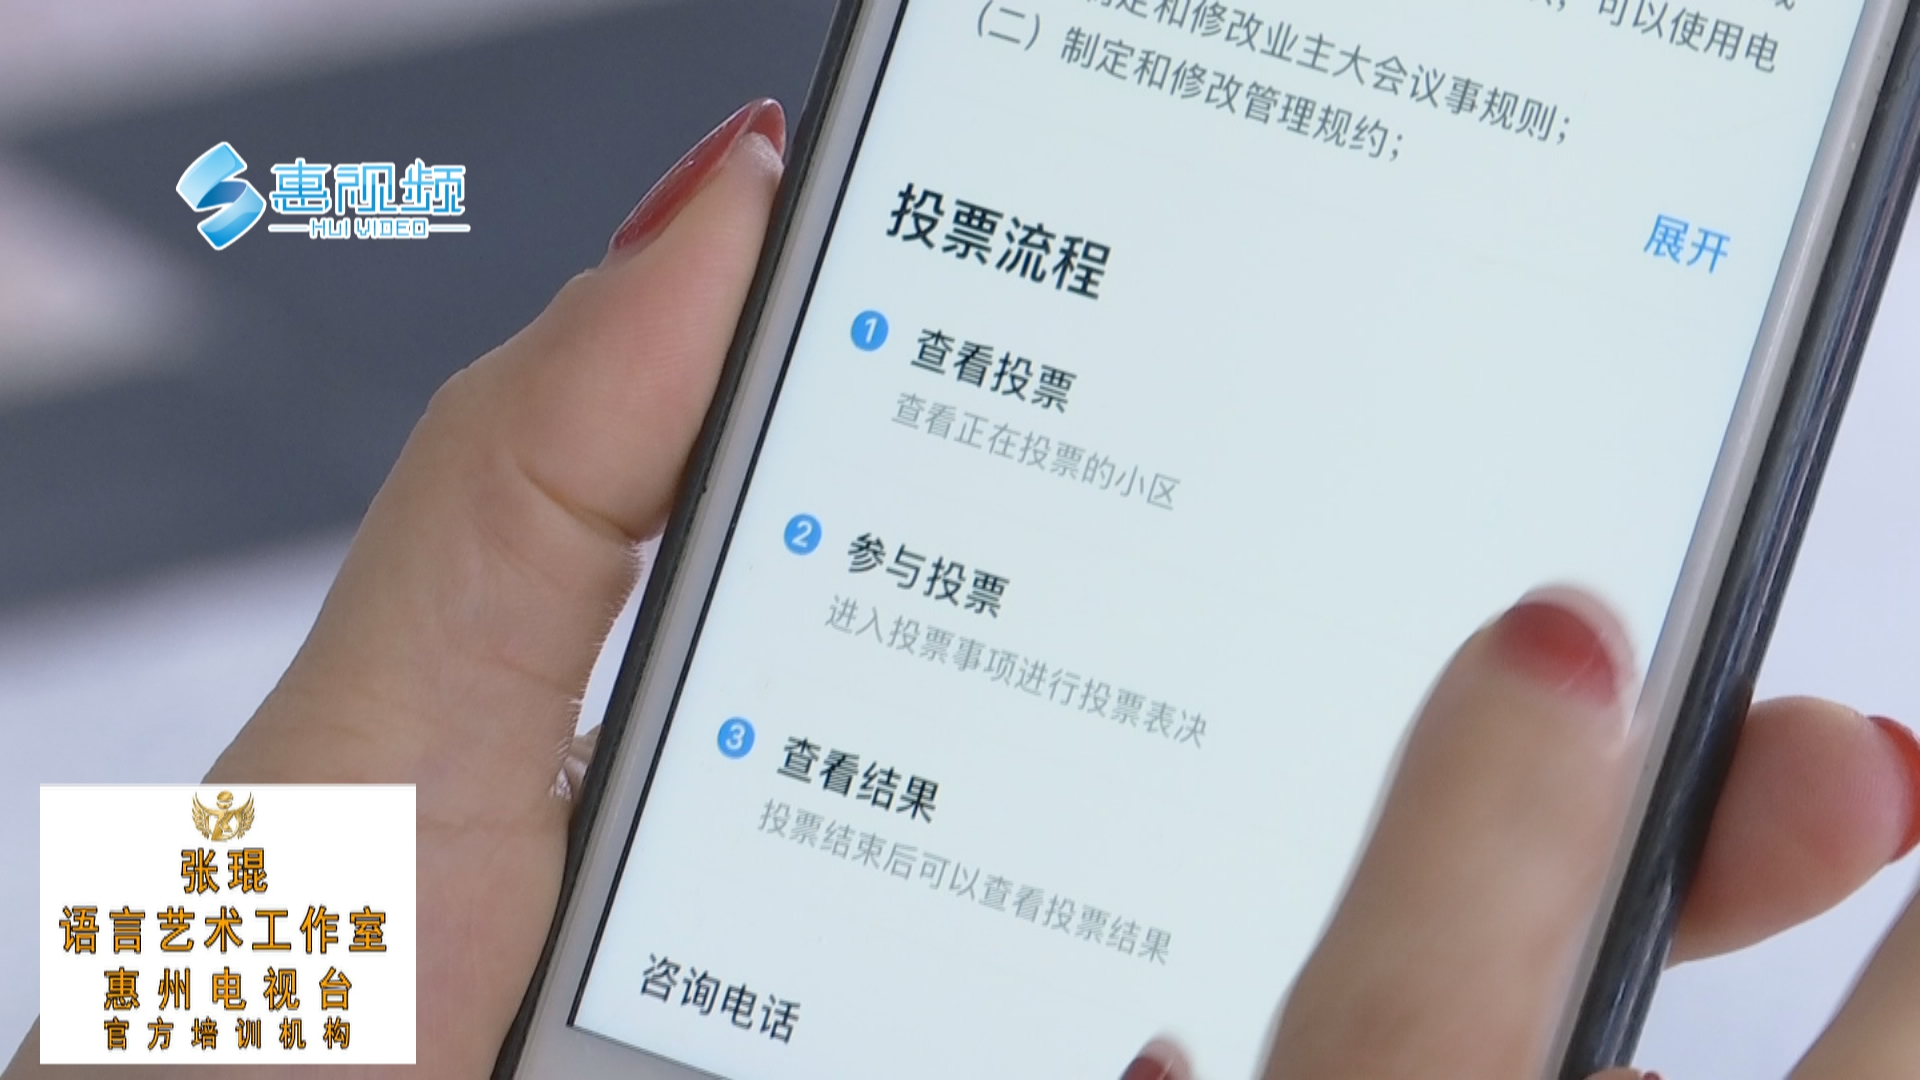 惠州:超20个小区申请和使用电子投票,有你家小区吗?